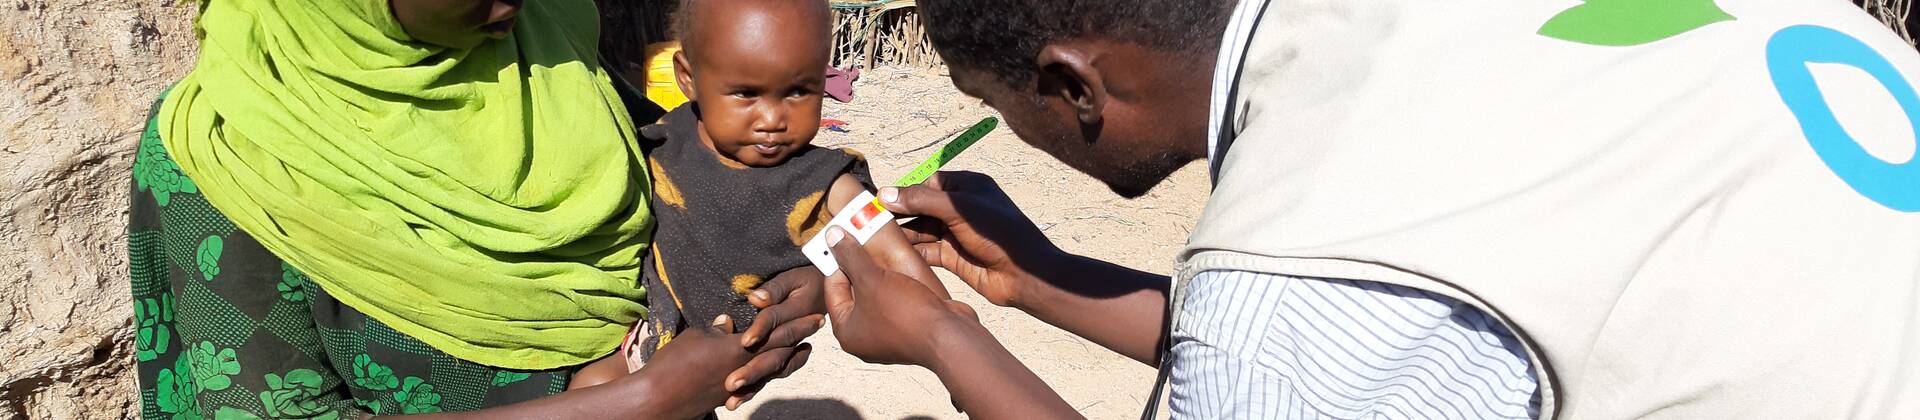 Ein Mitarbeiter von Aktion gegen den Hunger untersucht ein Kleinkind in den Armen der Mutter auf Mangelernährung.